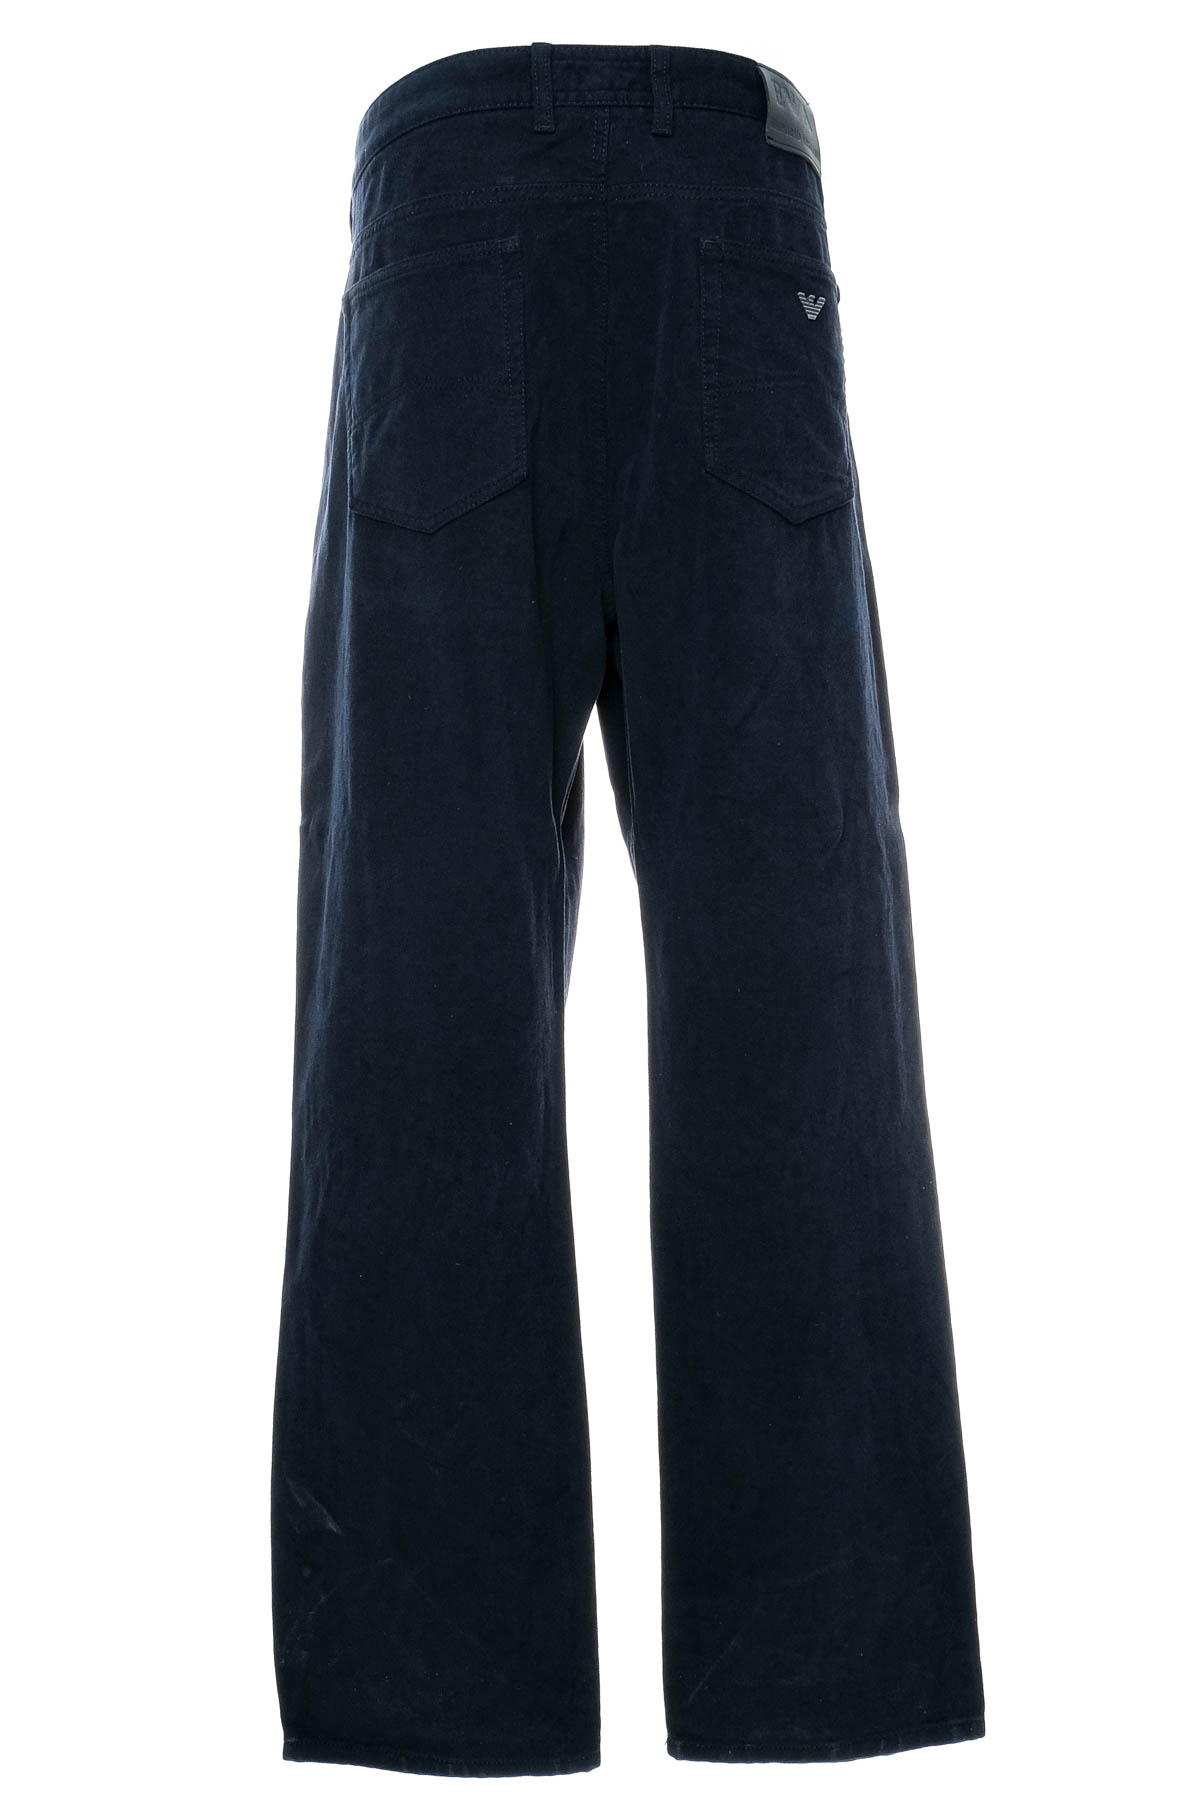 Pantalon pentru bărbați - Armani Jeans - 1